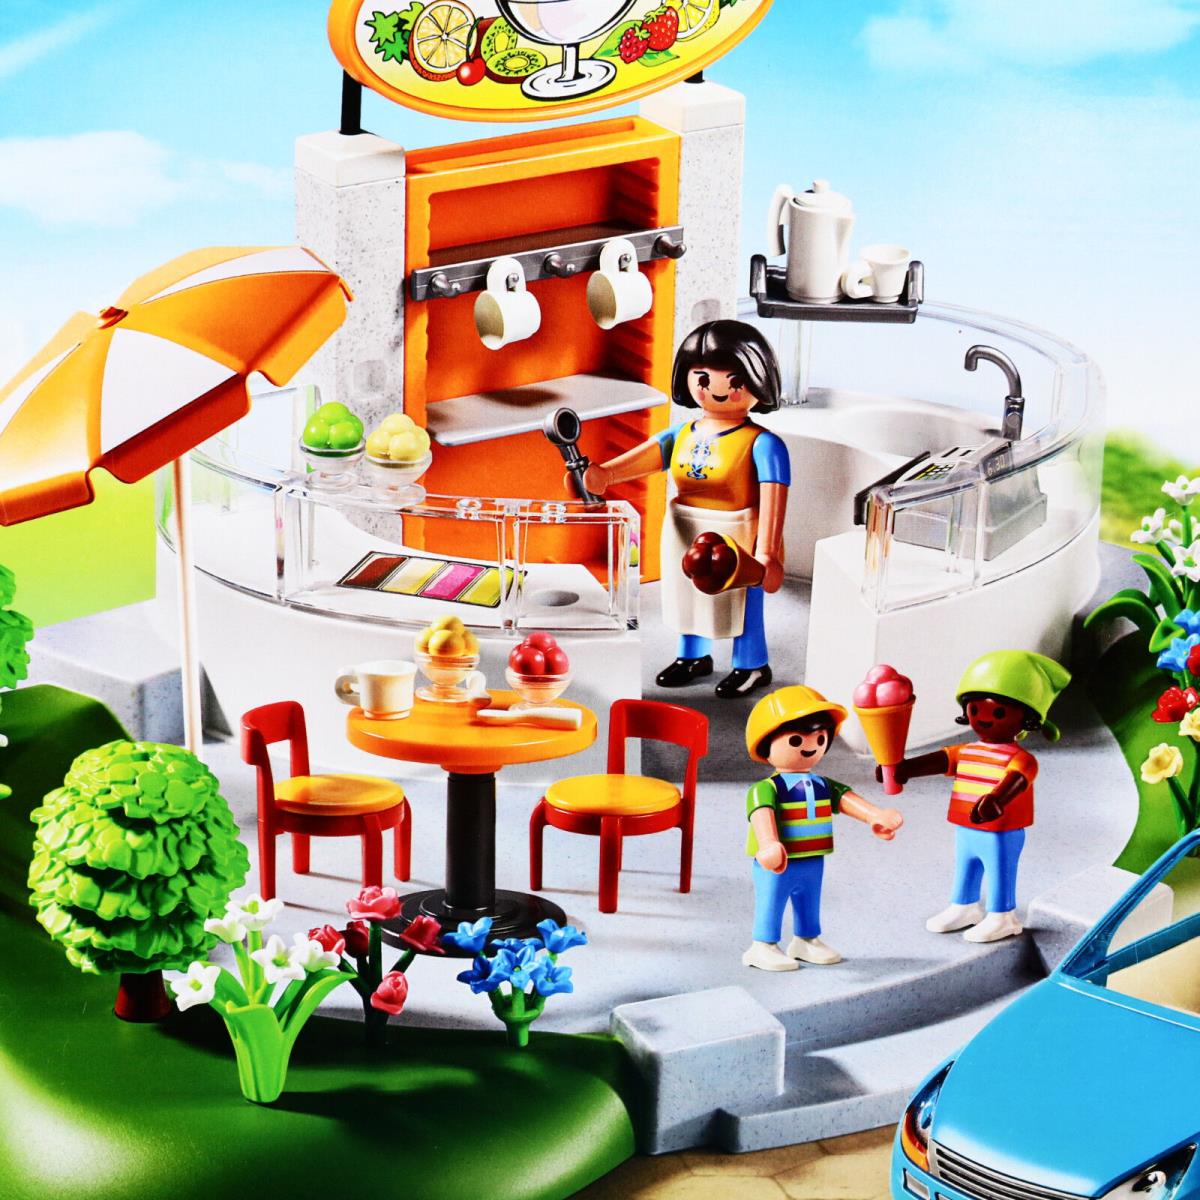 Playmobil Ice Cream Parlor Park Car 5644 City Life Playset Toys For Boys Age 4 5